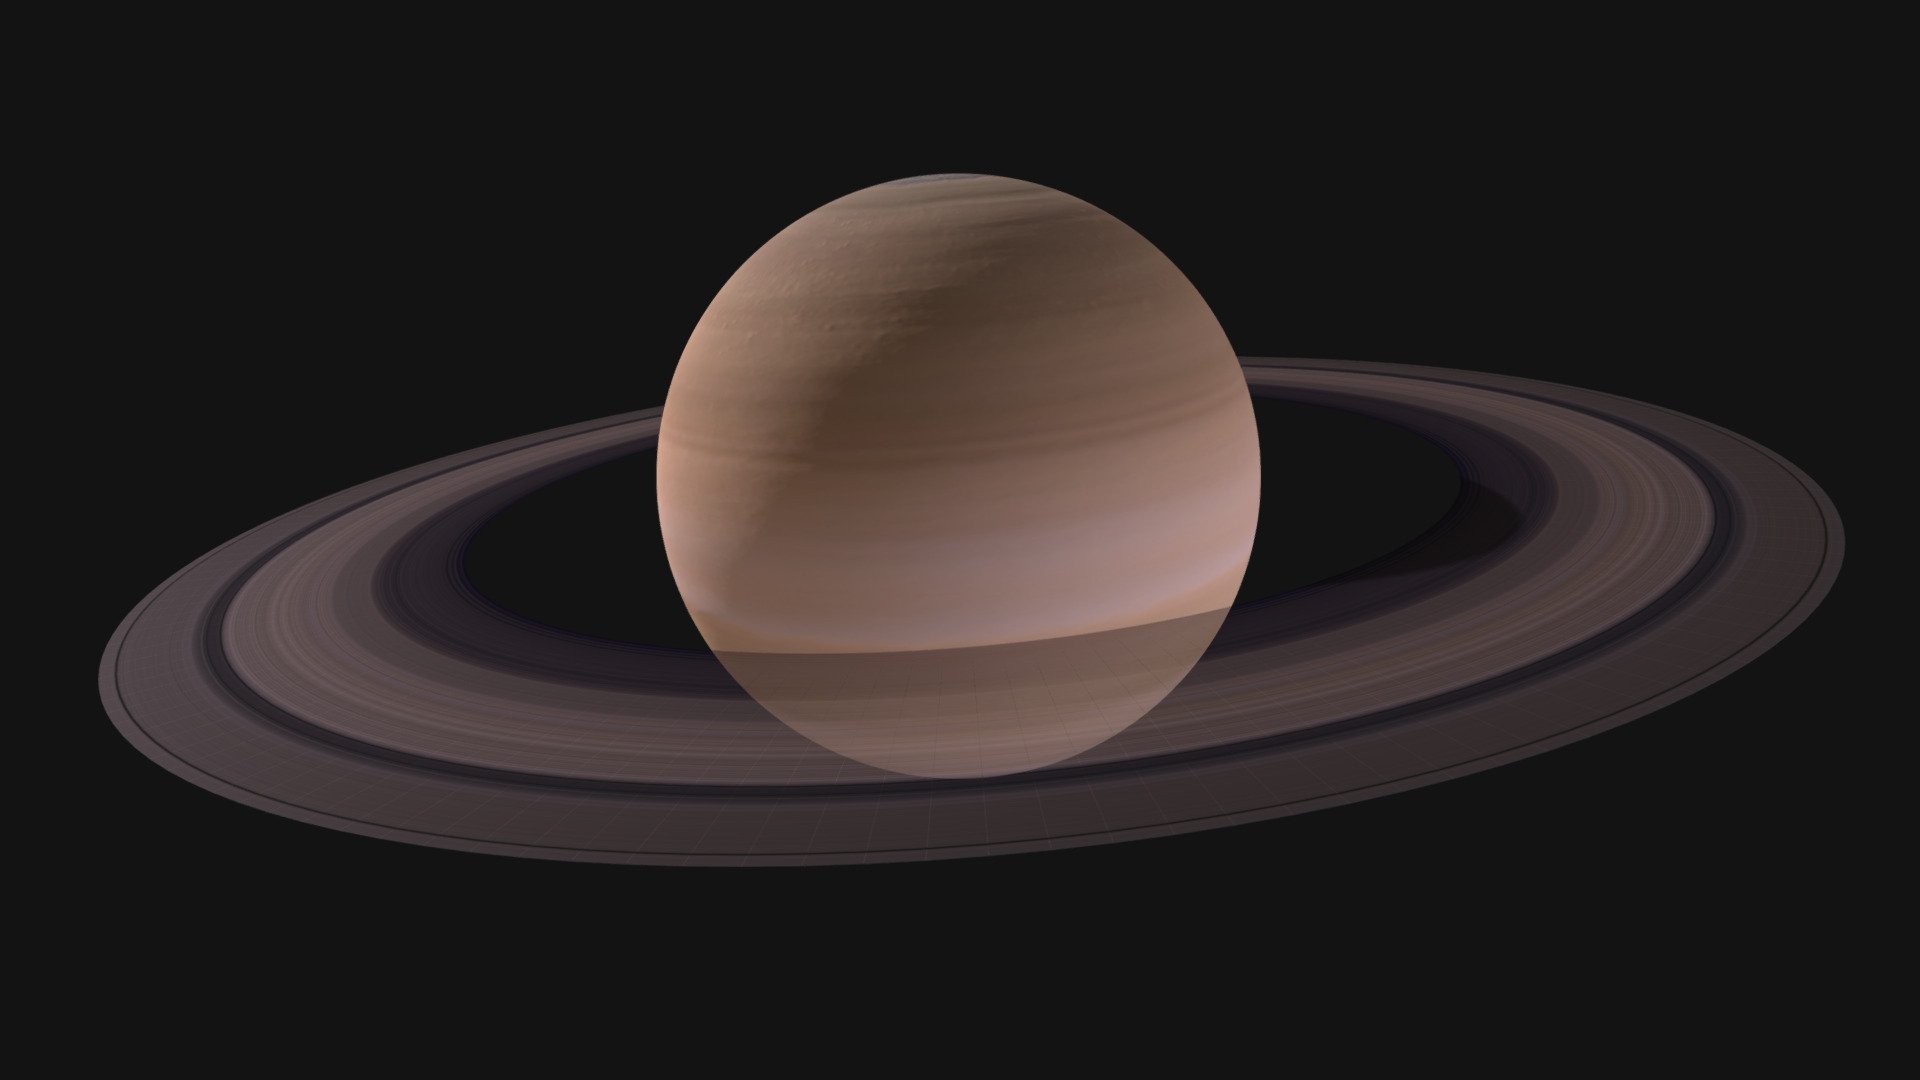 classr00m saturn planet models